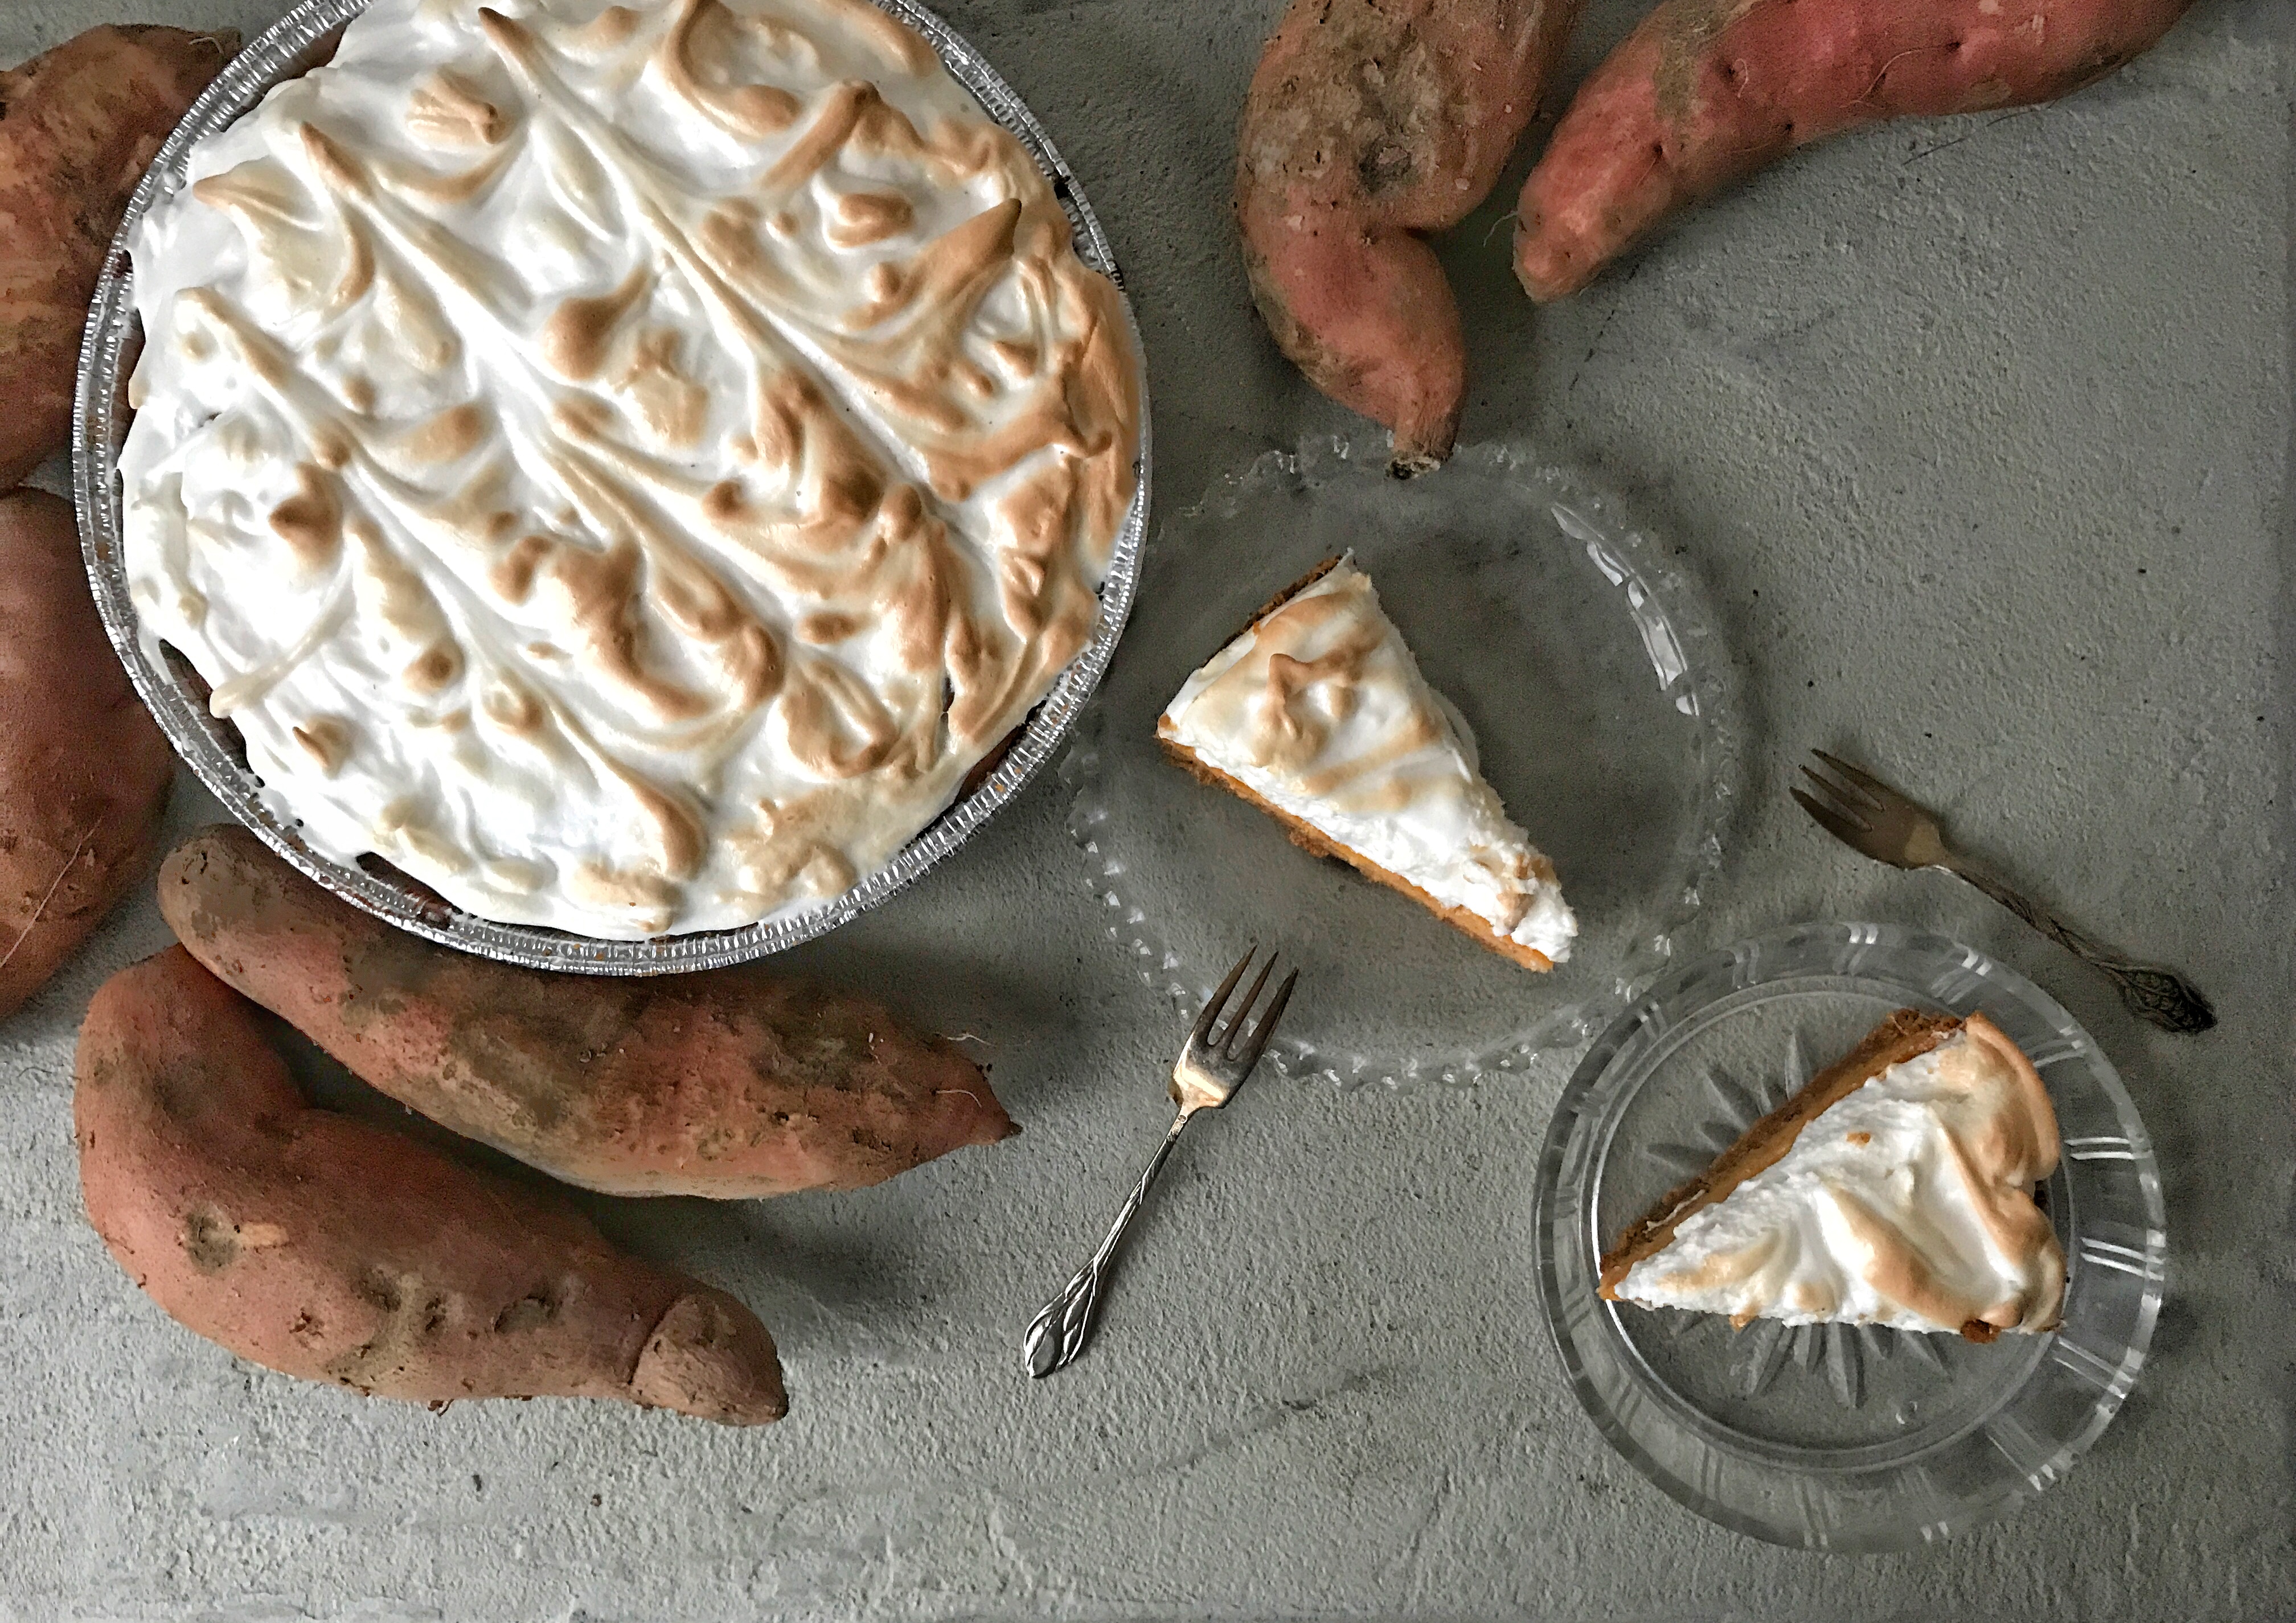 Missisippi Marshmallow Pie met zoete aardappel taart van zoete aardappels met marhmallow topping voor thanksgiving